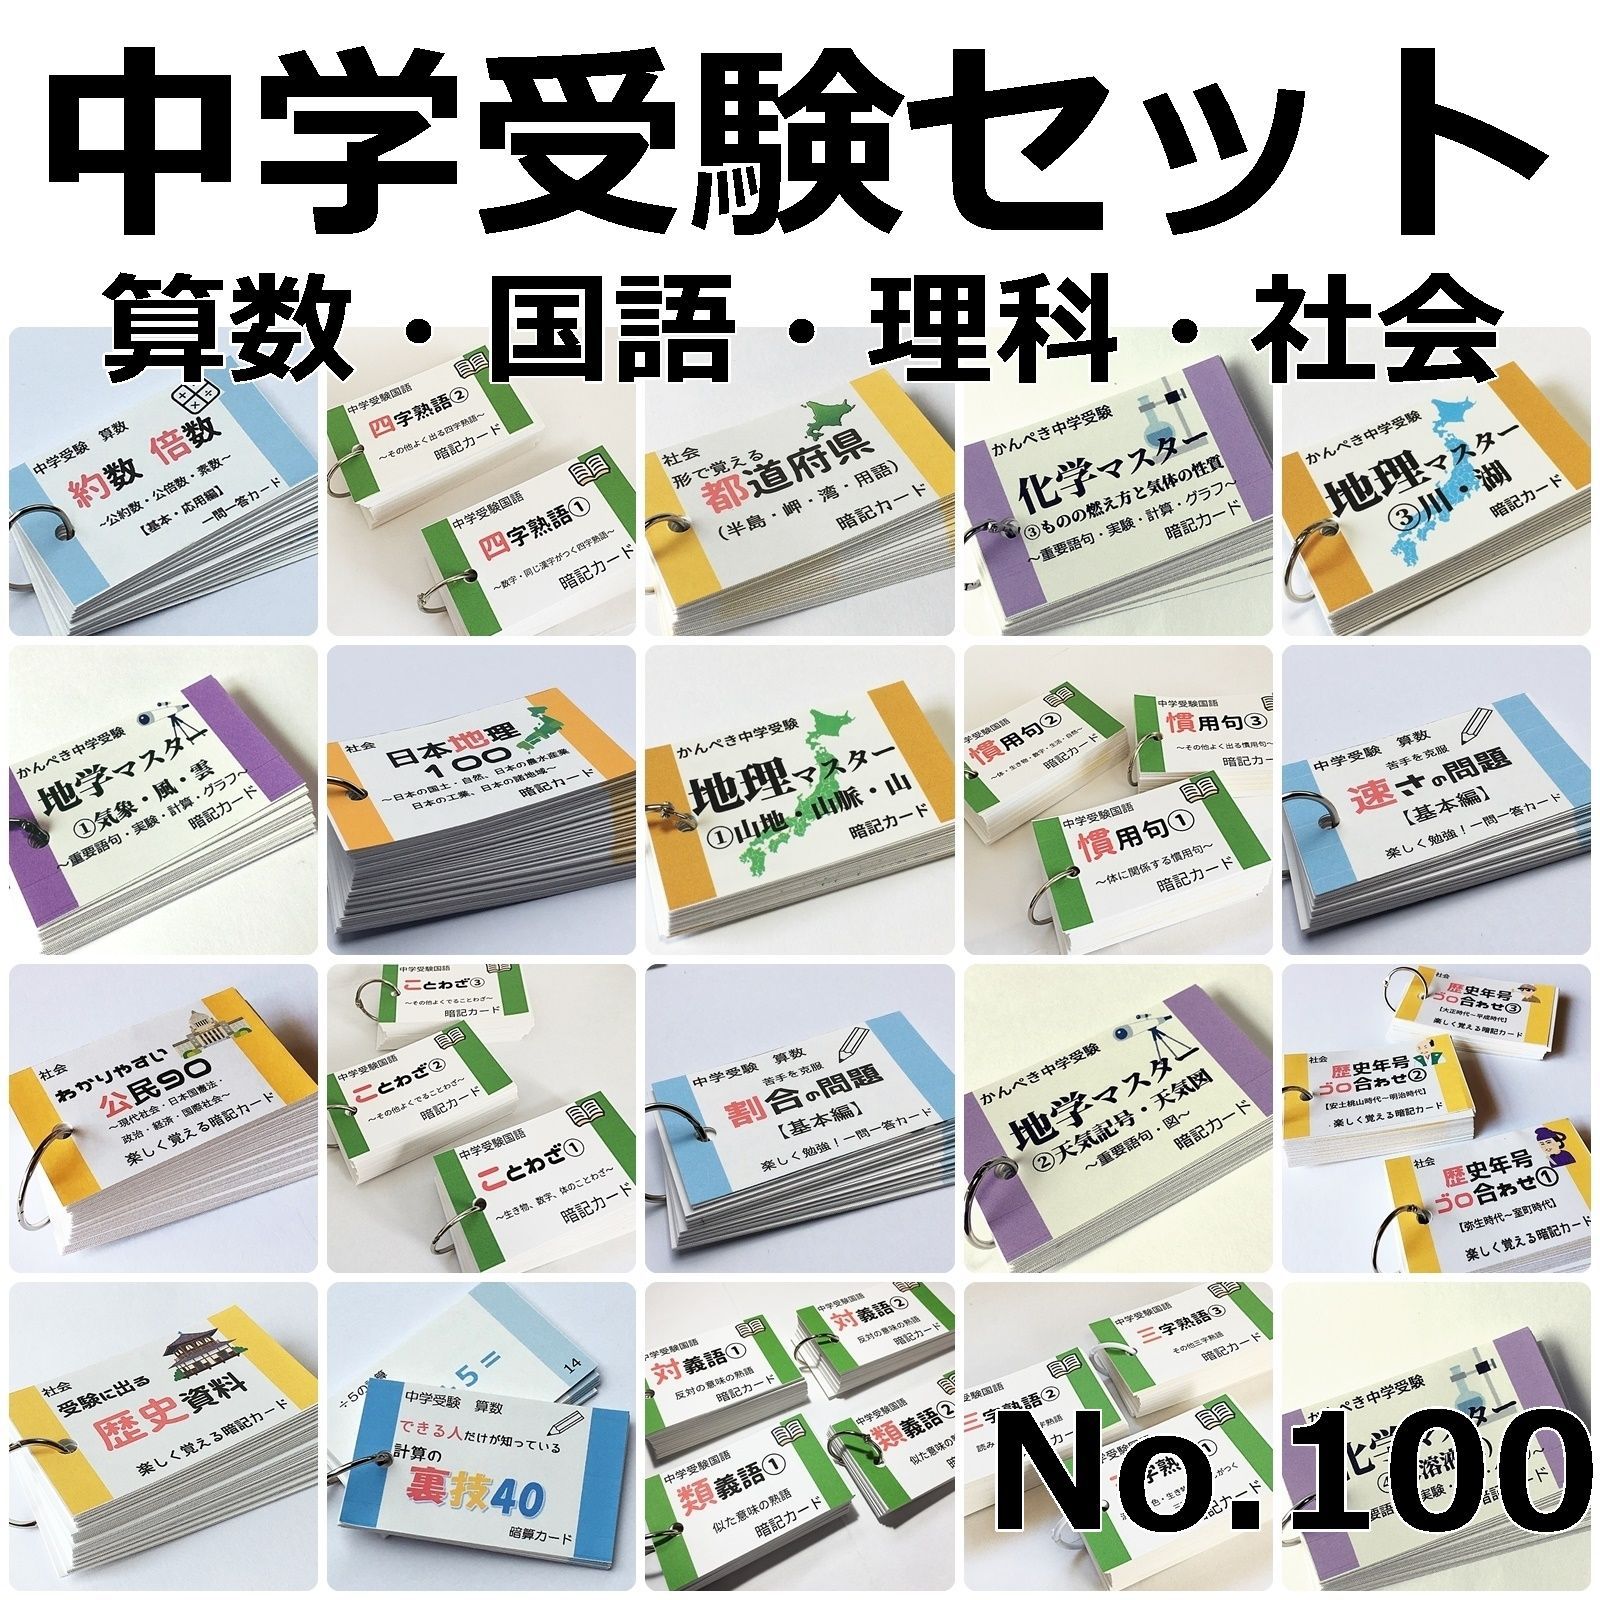 ◎【100】中学受験 算数・国語・理科・社会 暗記カードセット 中学入試 